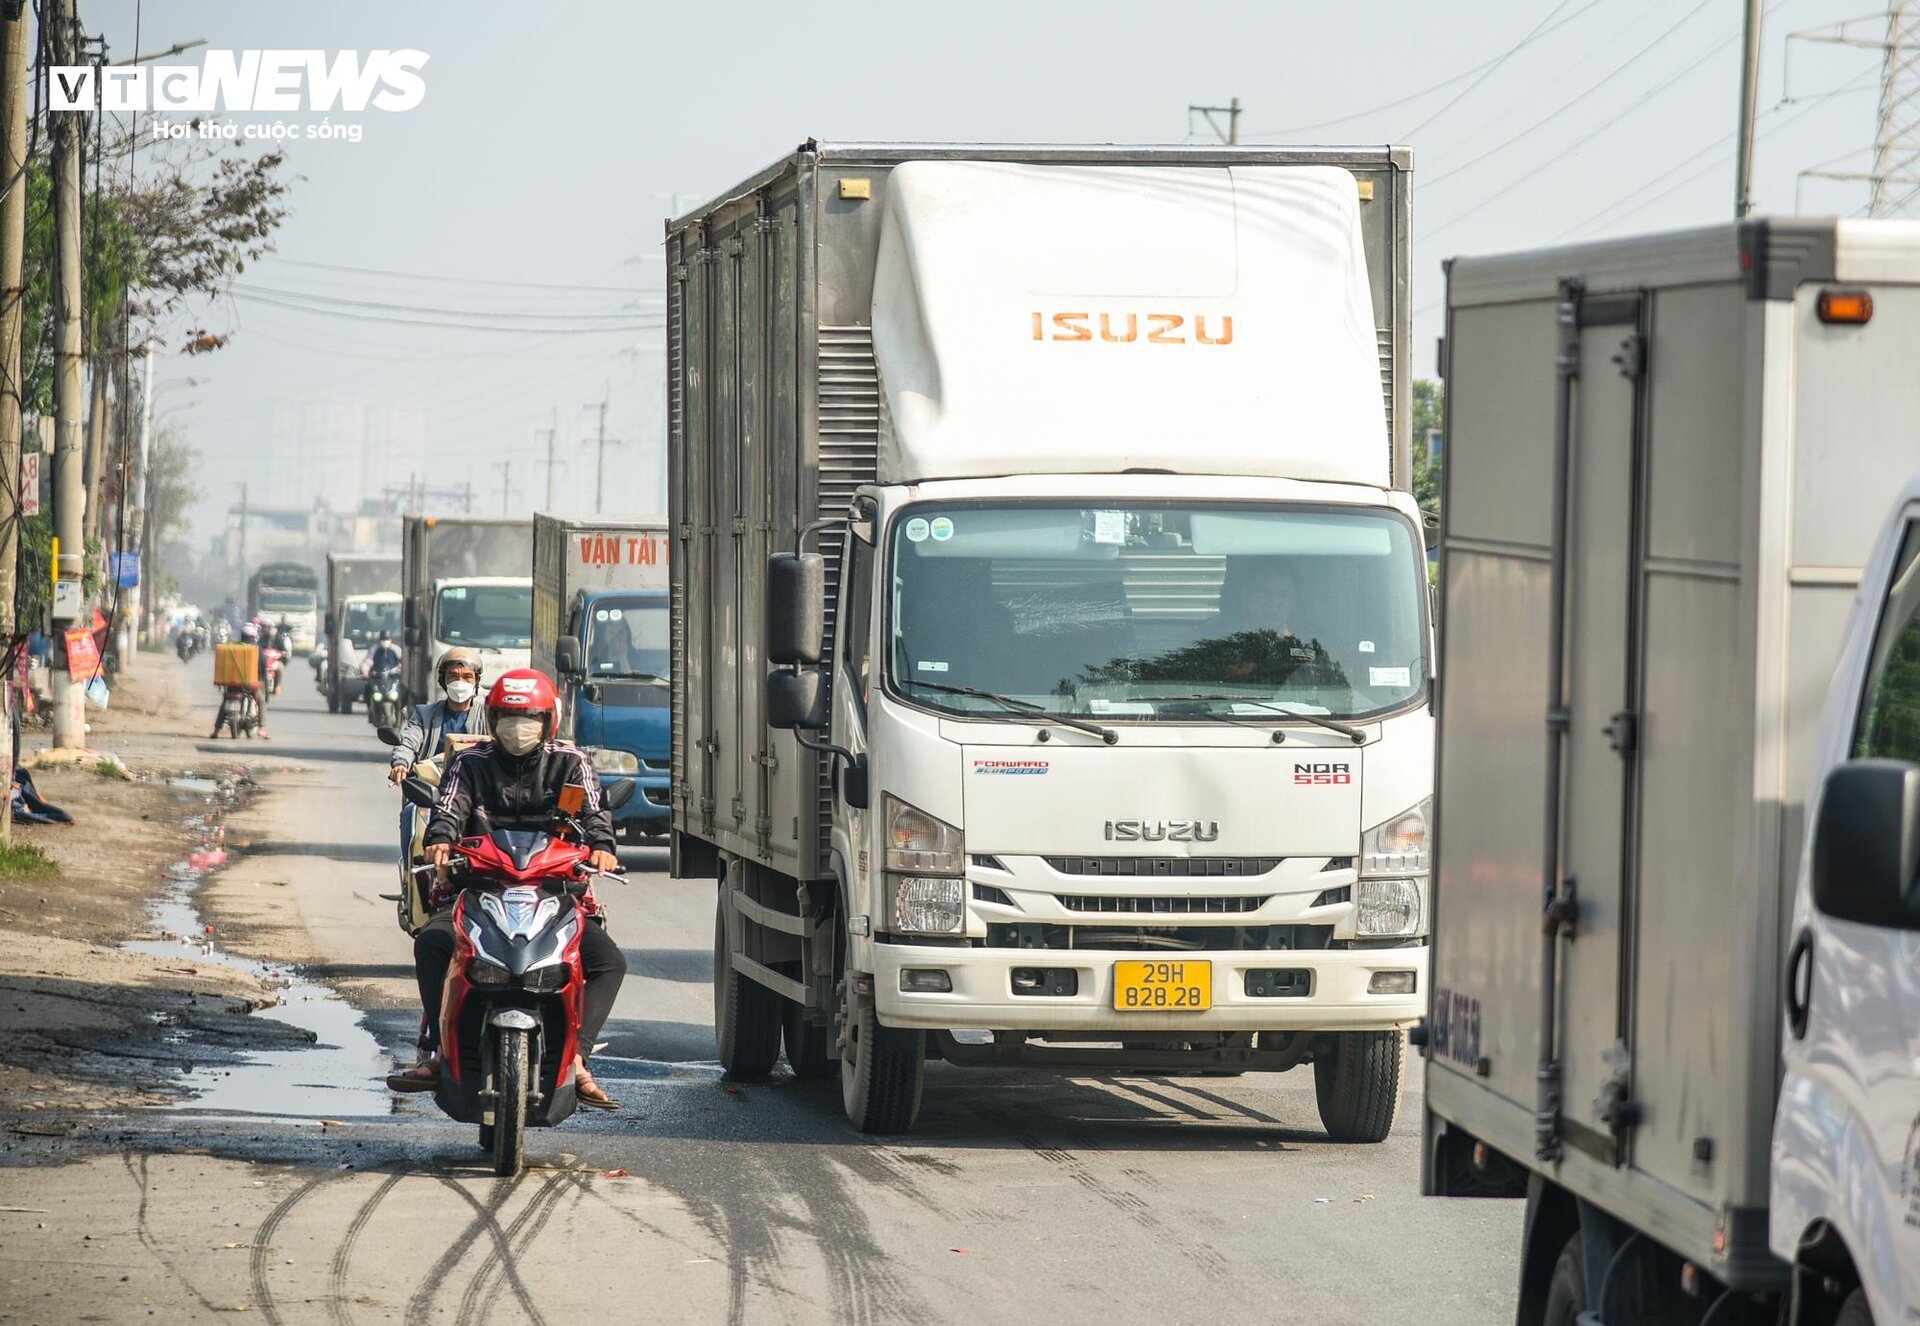 Cận cảnh tuyến đường ở Hà Nội sắp được đầu tư 2.800 tỷ đồng để mở rộng- Ảnh 8.